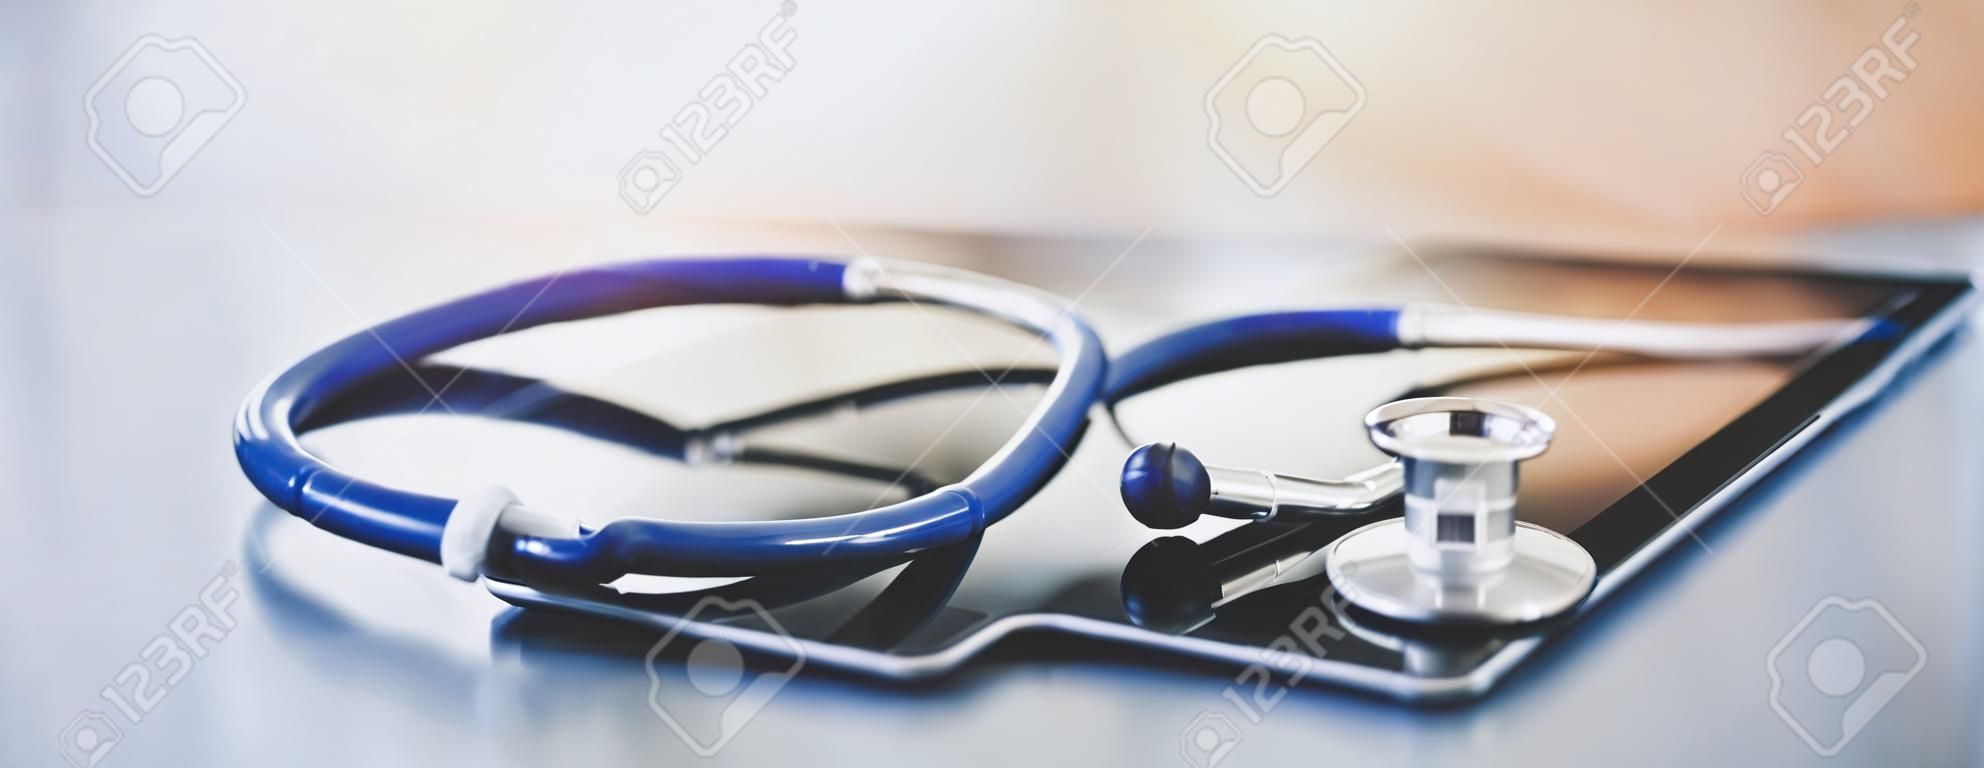 Medizinische Geräte: blaues Stethoskop und Tablet auf weißem Hintergrund.